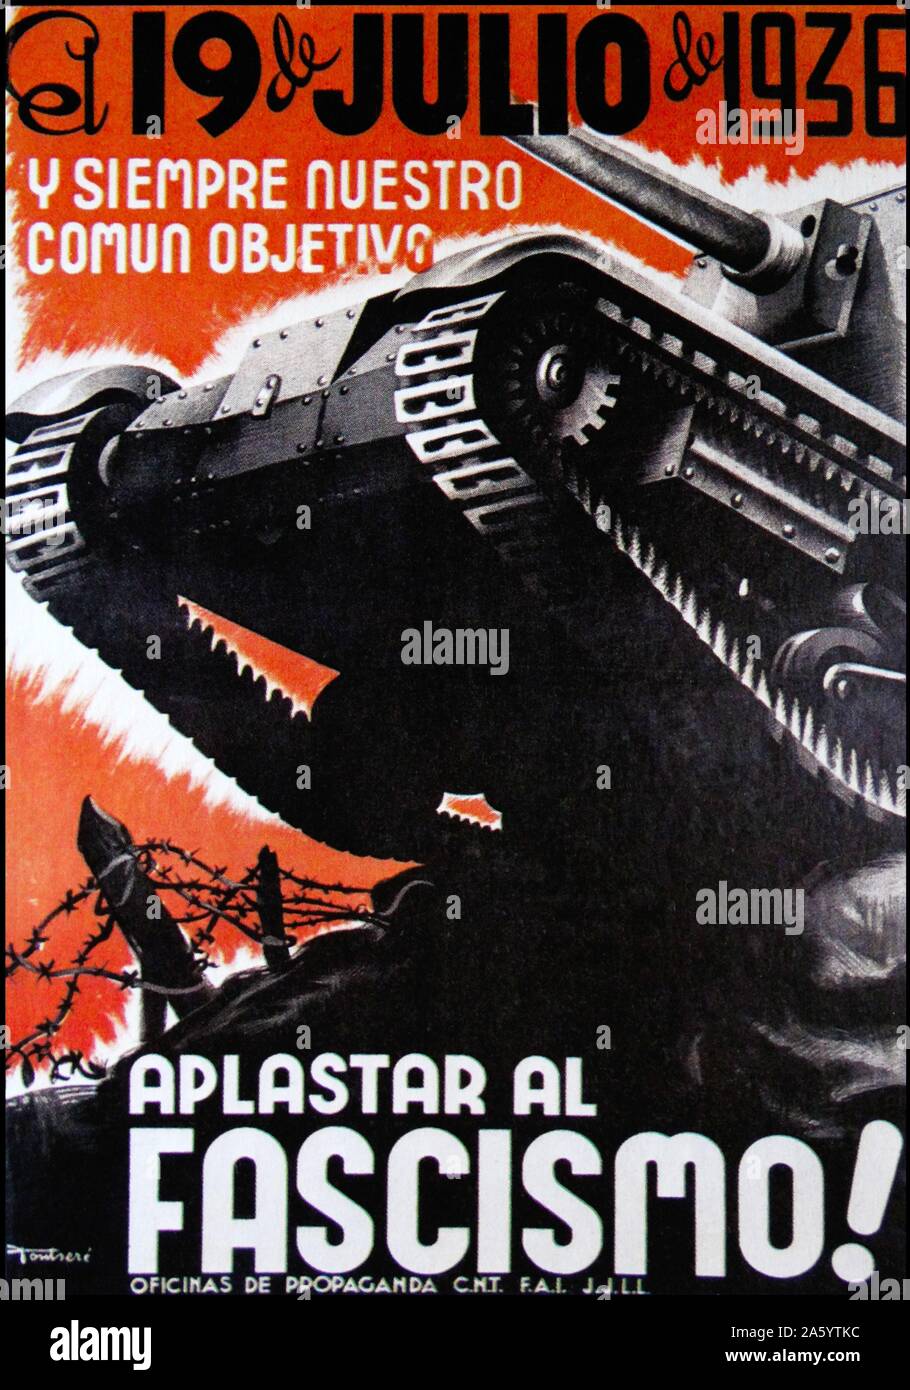 Spanish Civil War propaganda poster. 'El 19 de Julio y siempre nuestro comun objetivo. Aplastar al fascismo' (On 19th July and always, our aim. Smash Fascism) Stock Photo